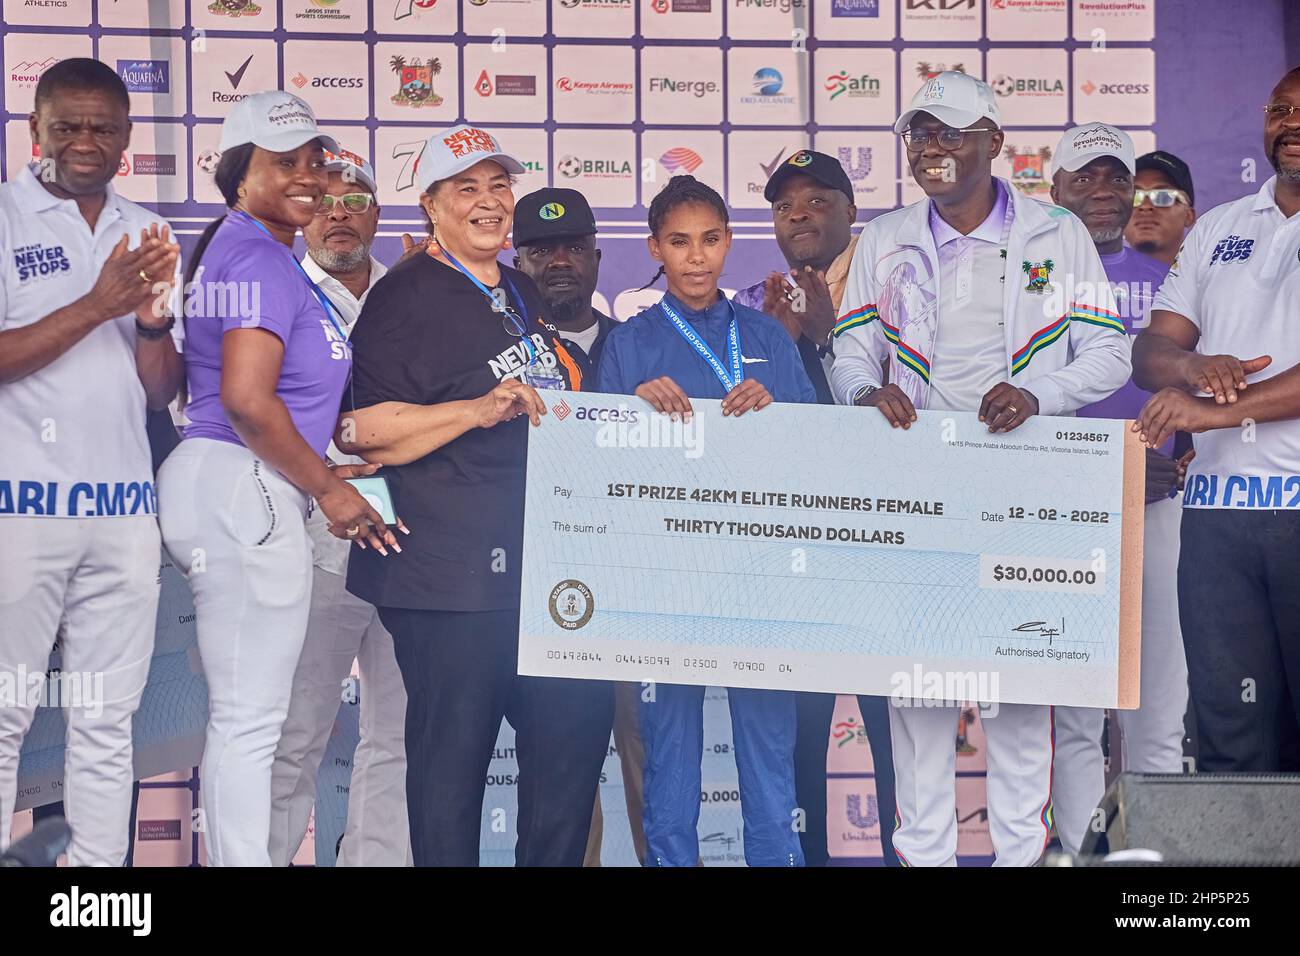 3rd piazzare la vincitrice femminile, Dagne Siranesh riceve una medaglia e un premio in denaro dopo aver gareggiato nella maratona di Access Bank Lagos il 12 febbraio 2022. Foto Stock